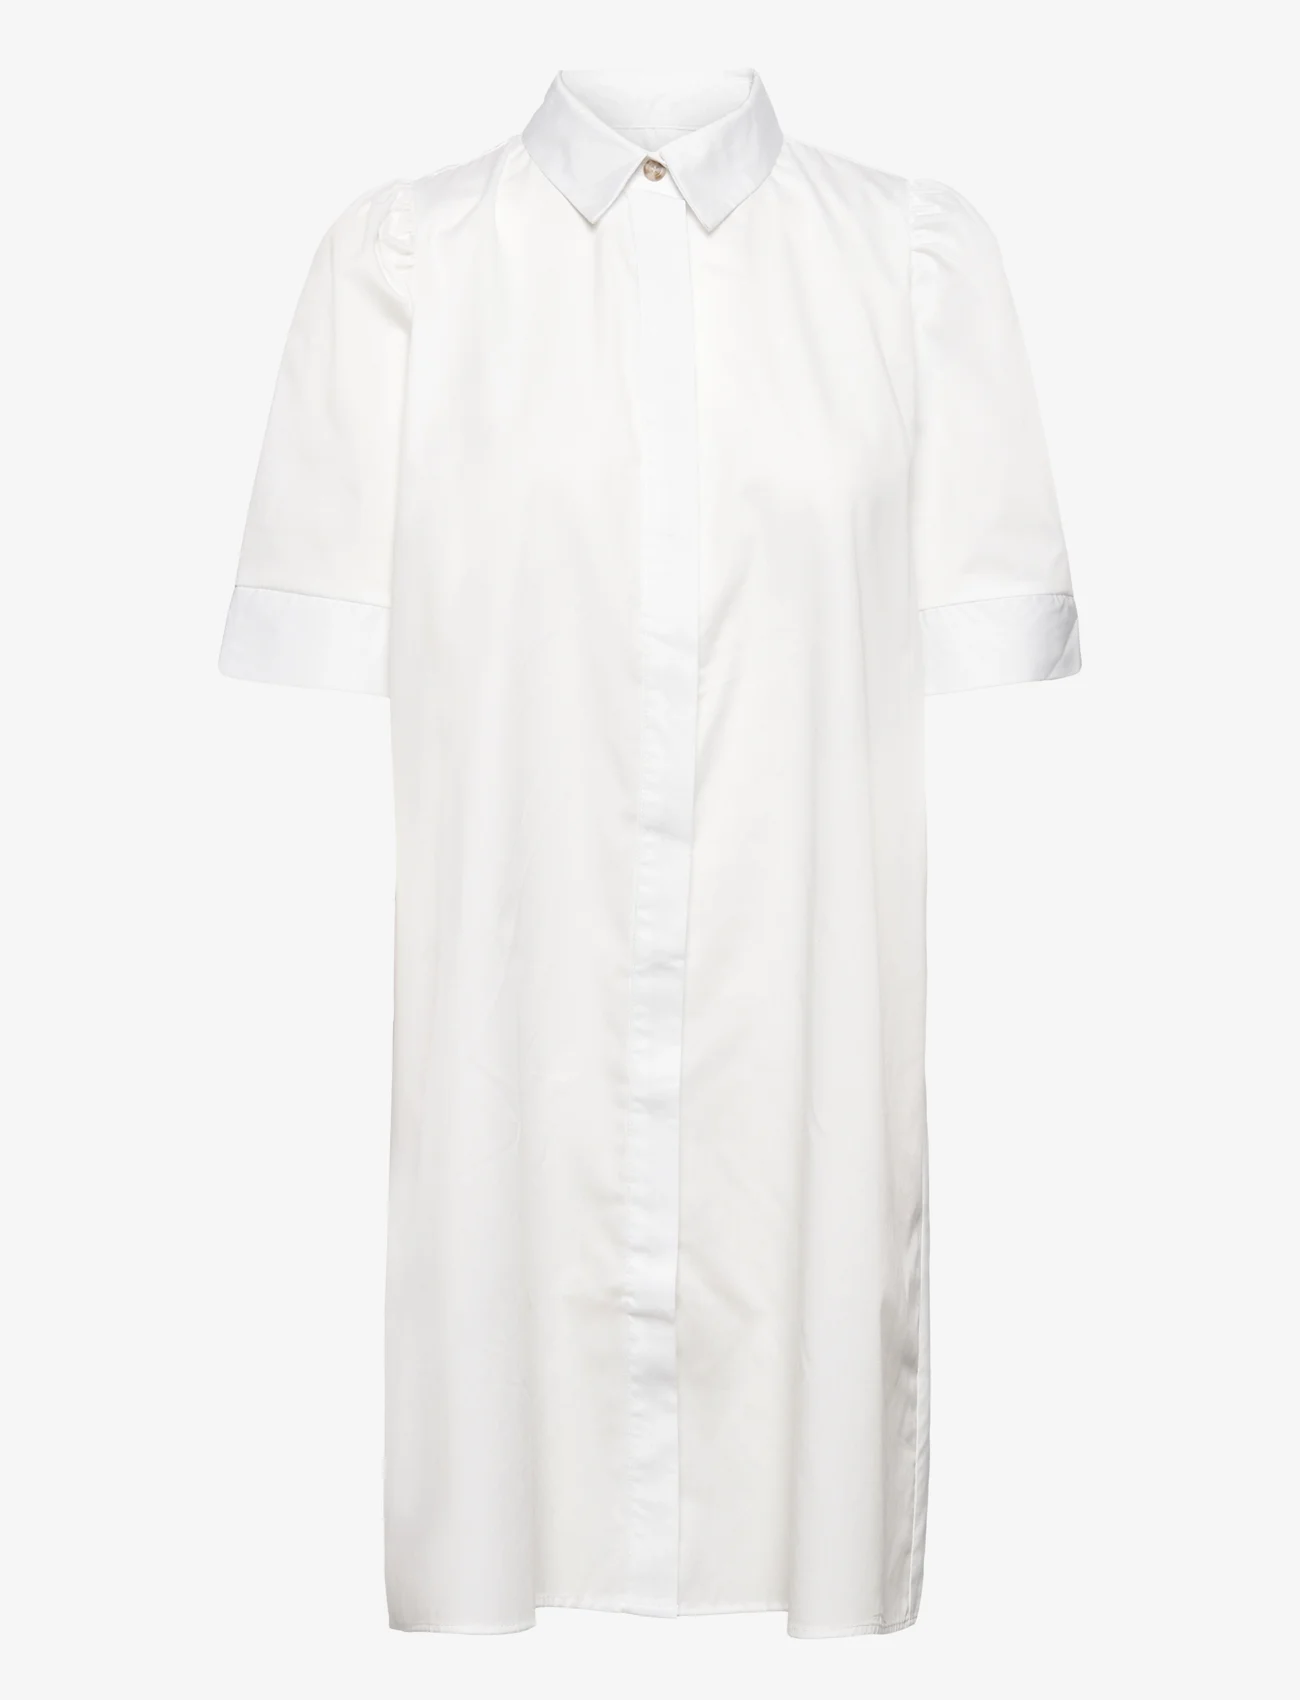 NORR - Billie dress - shirt dresses - white - 0